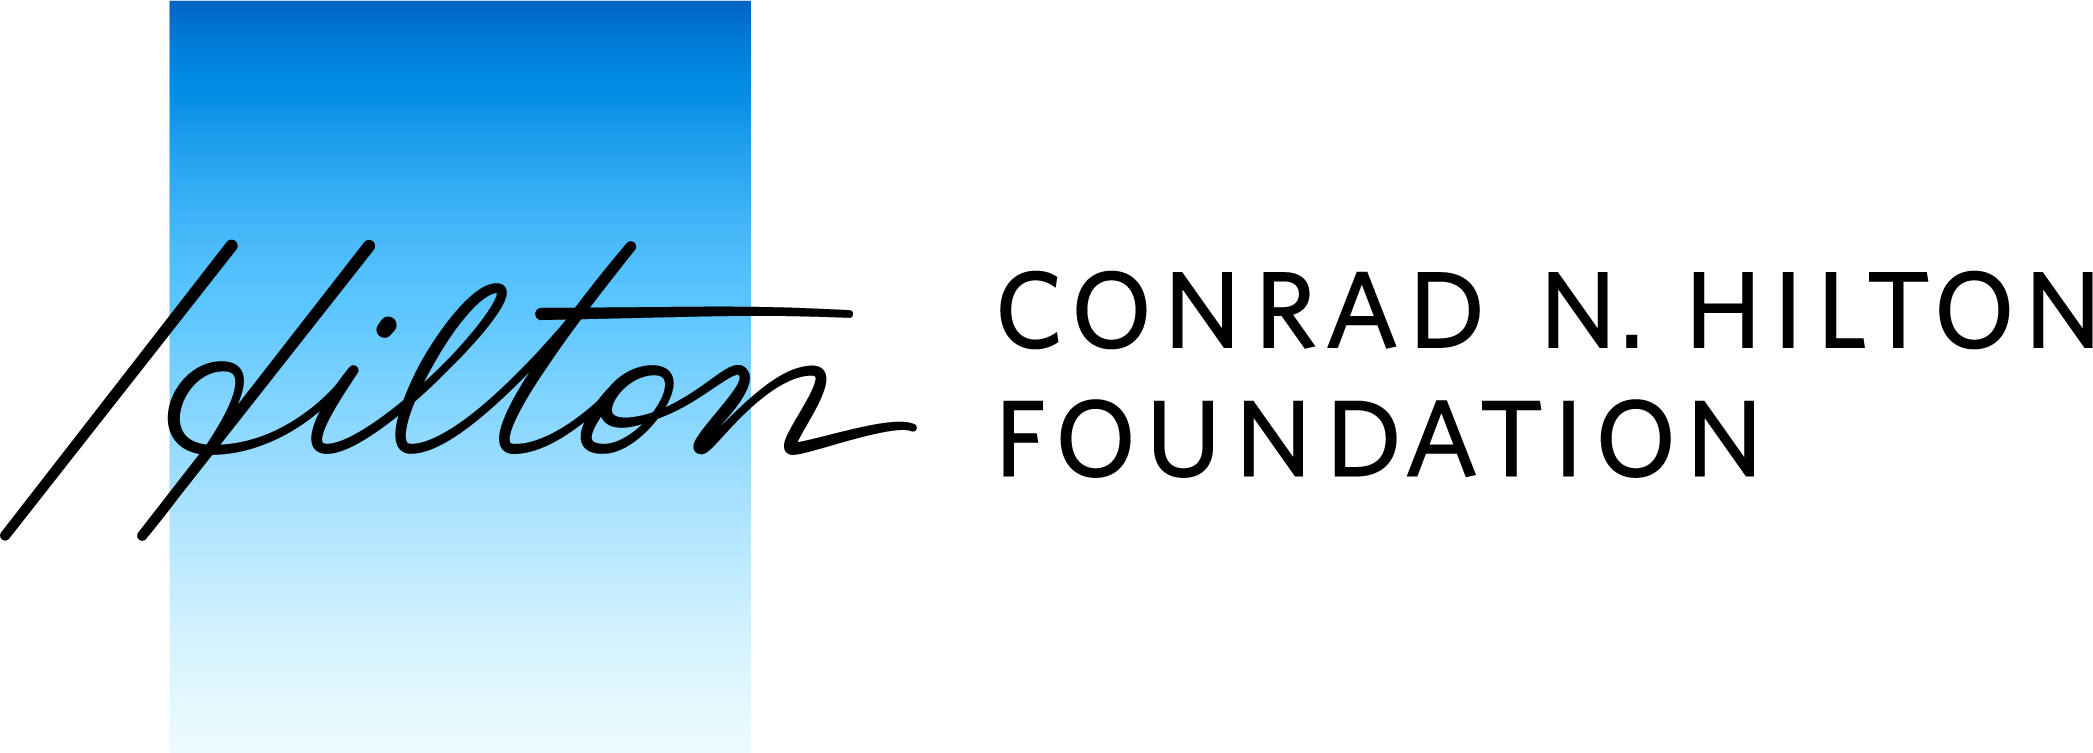 Conrad_N._Hilton_Foundation_logo